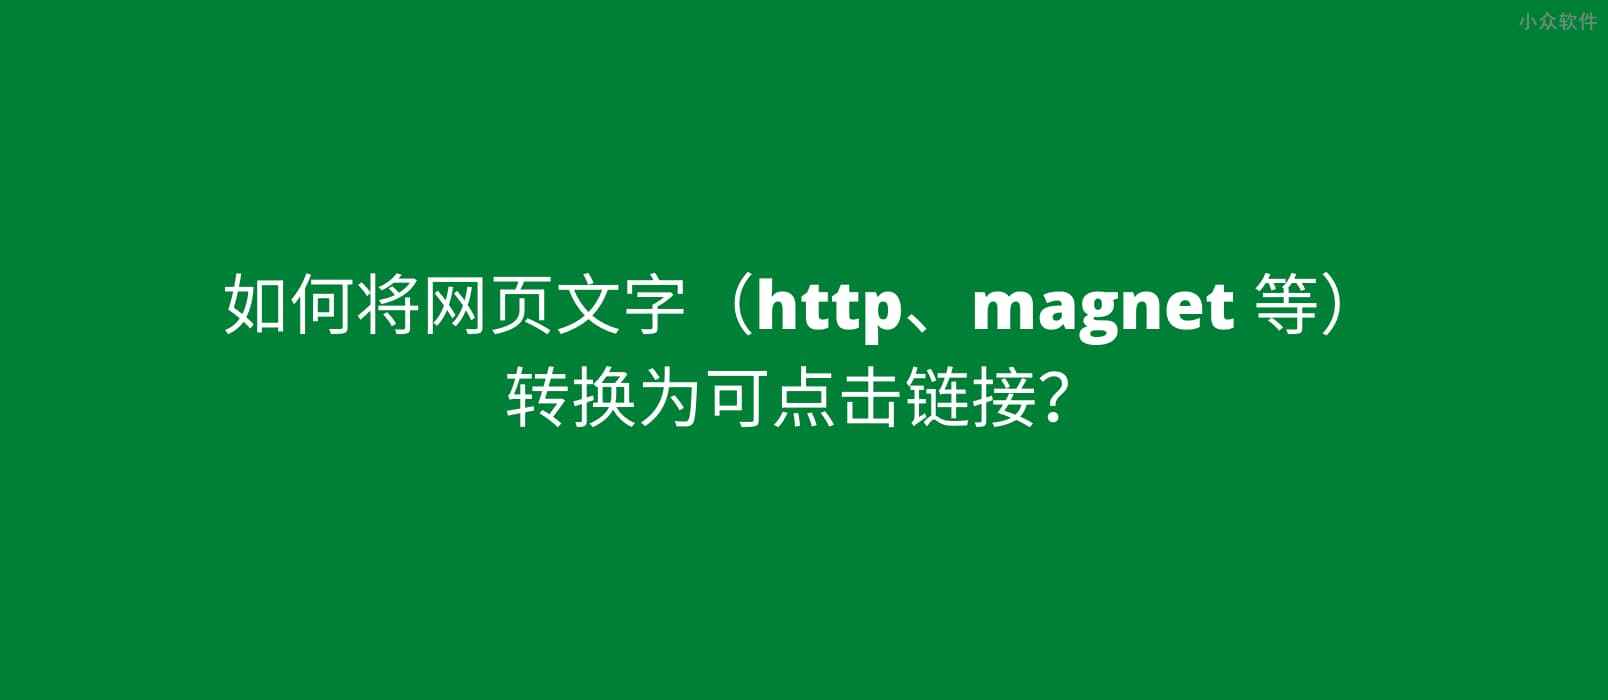 如何将带有 magnet: 的磁力链接文本转换为可点击链接？